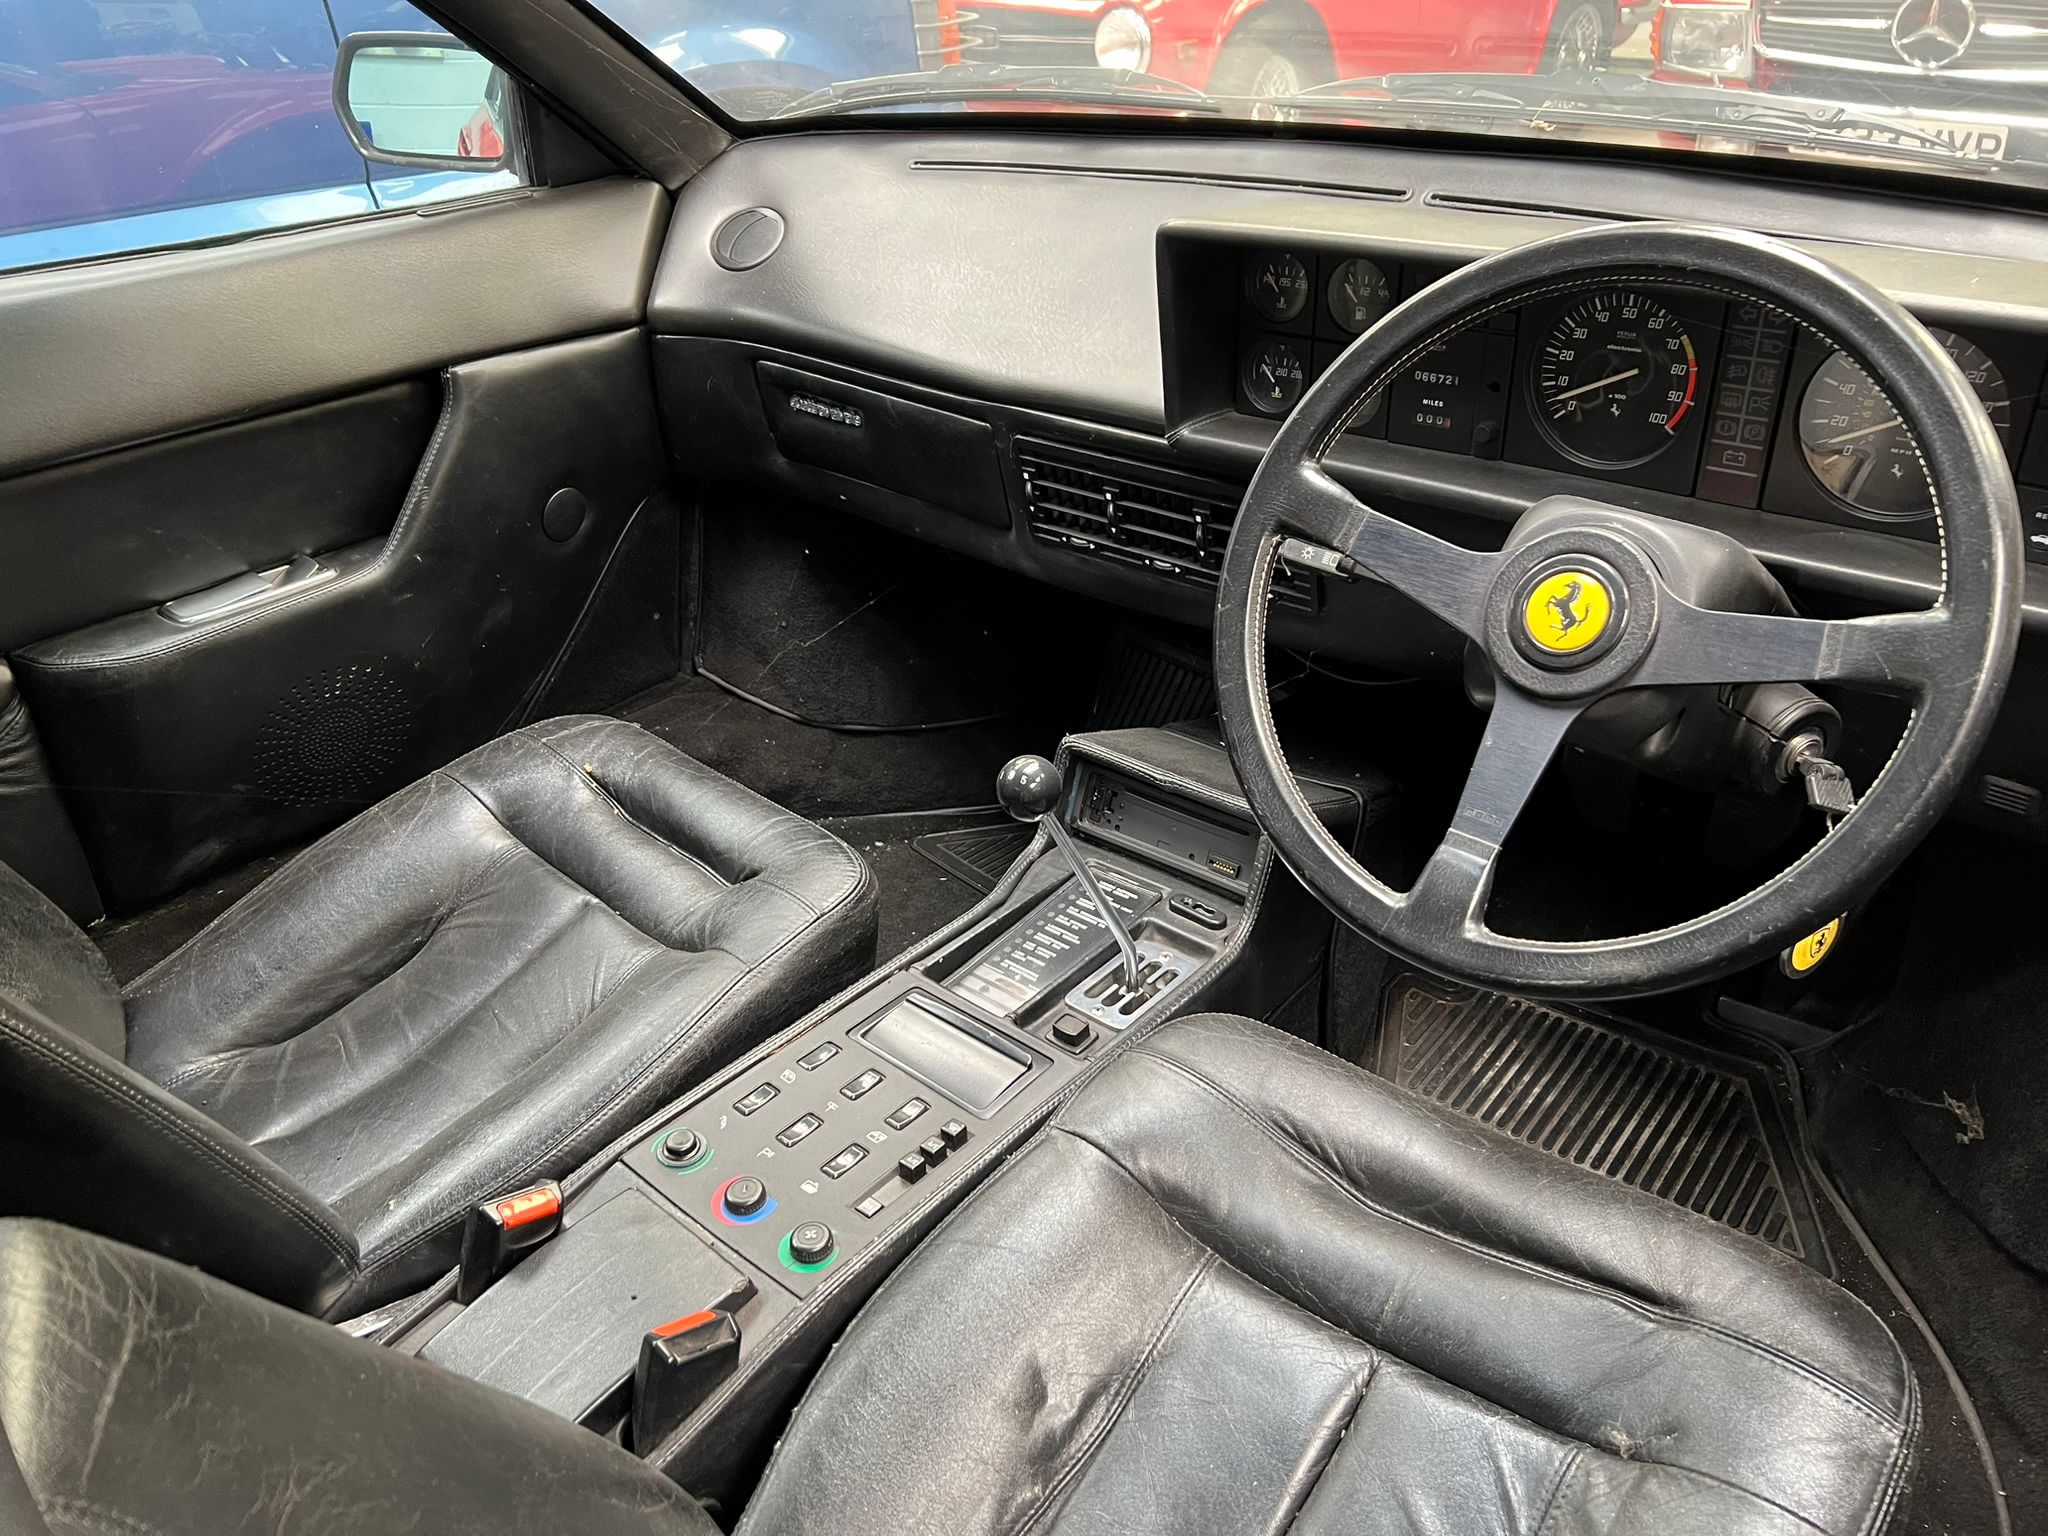 Ferrari Mondial Quattrovalvole Coupe 1984 - Image 16 of 22